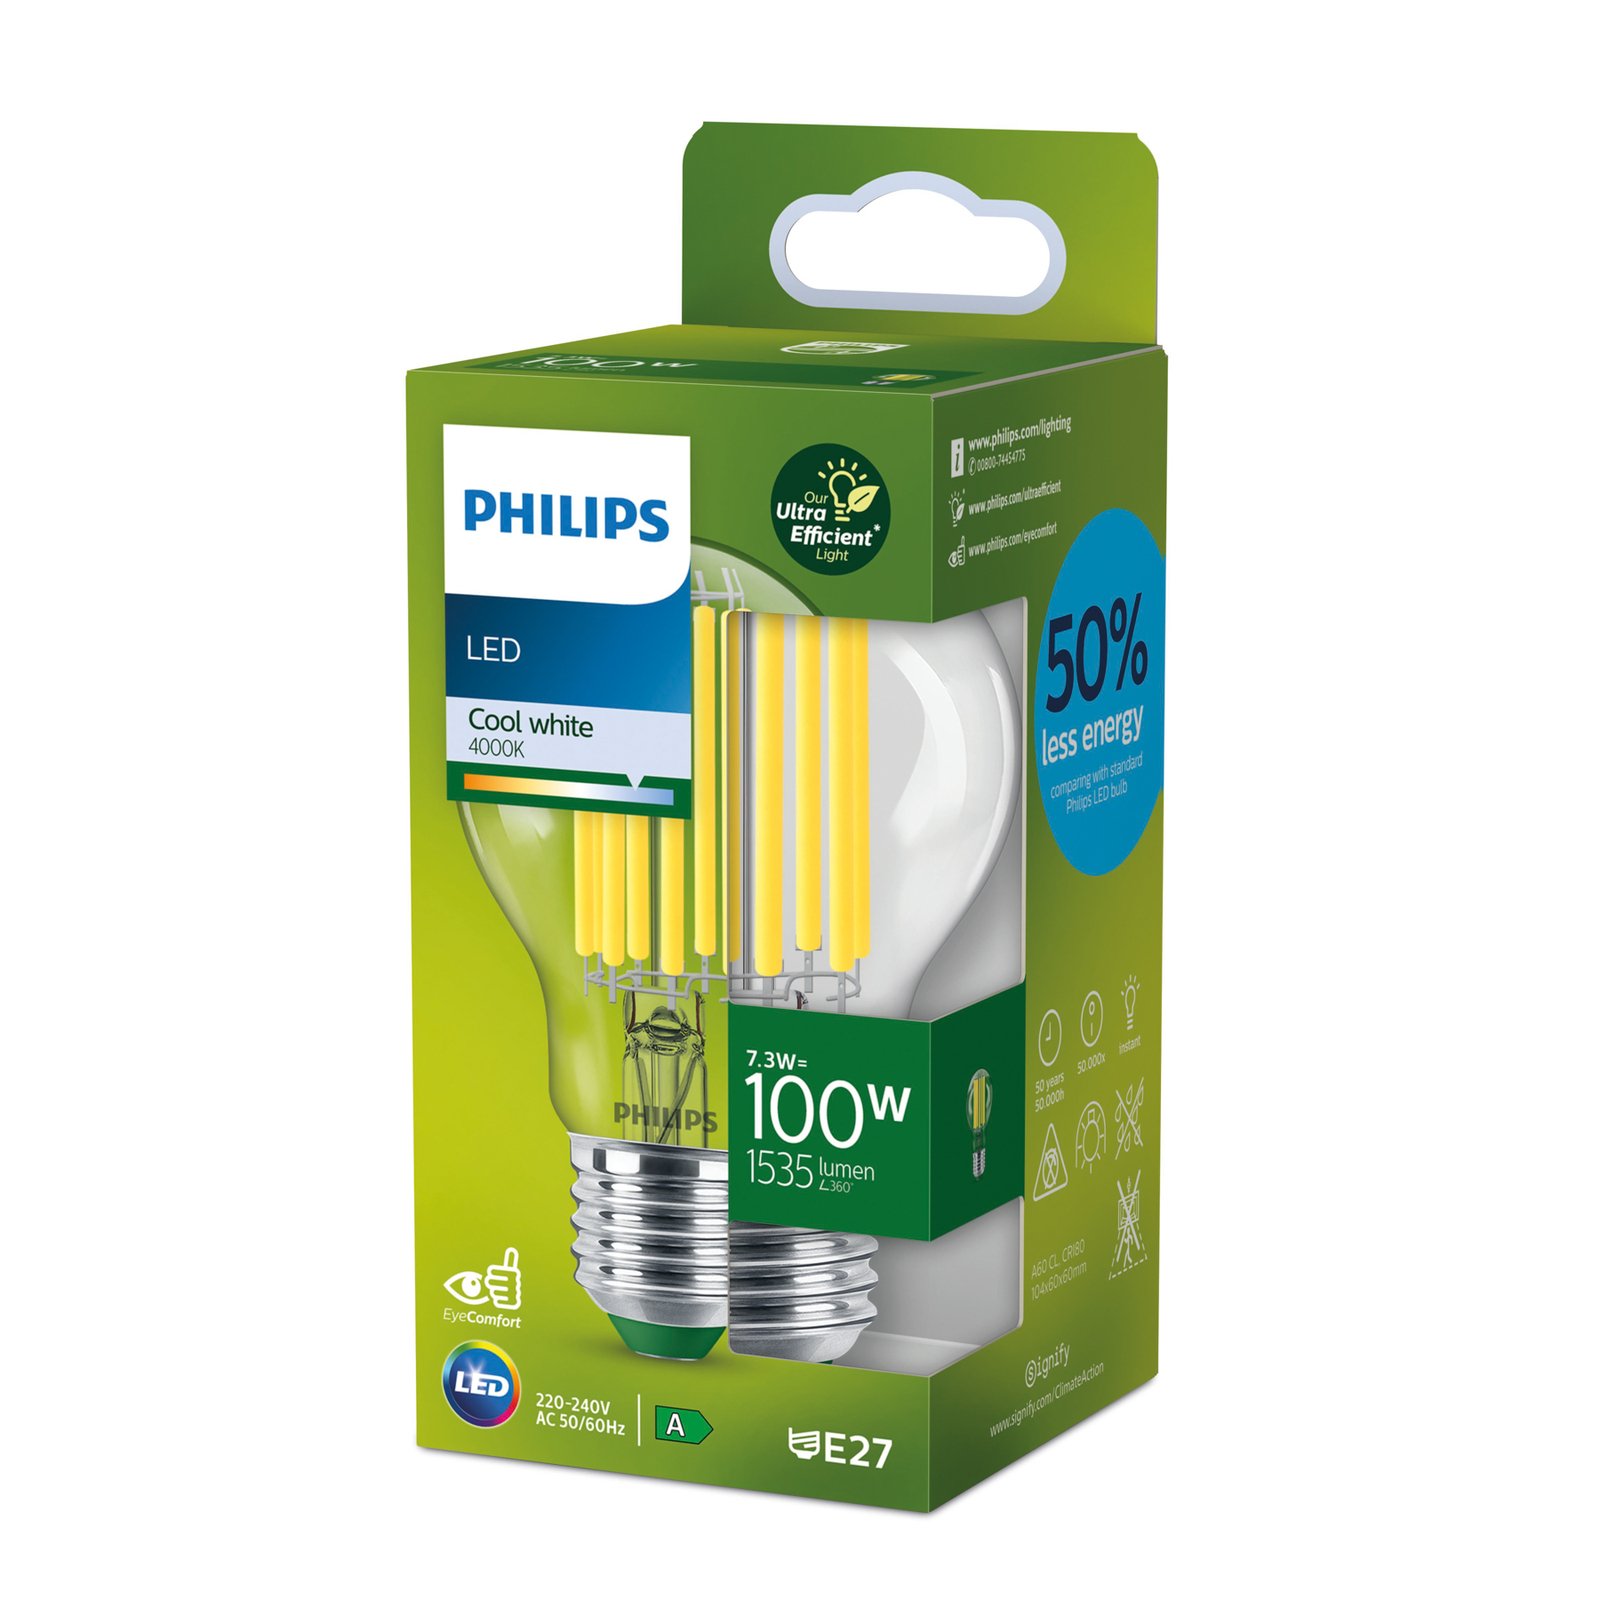 Philips E27 LED žiarovka 7,3W 1535lm 4000K číra